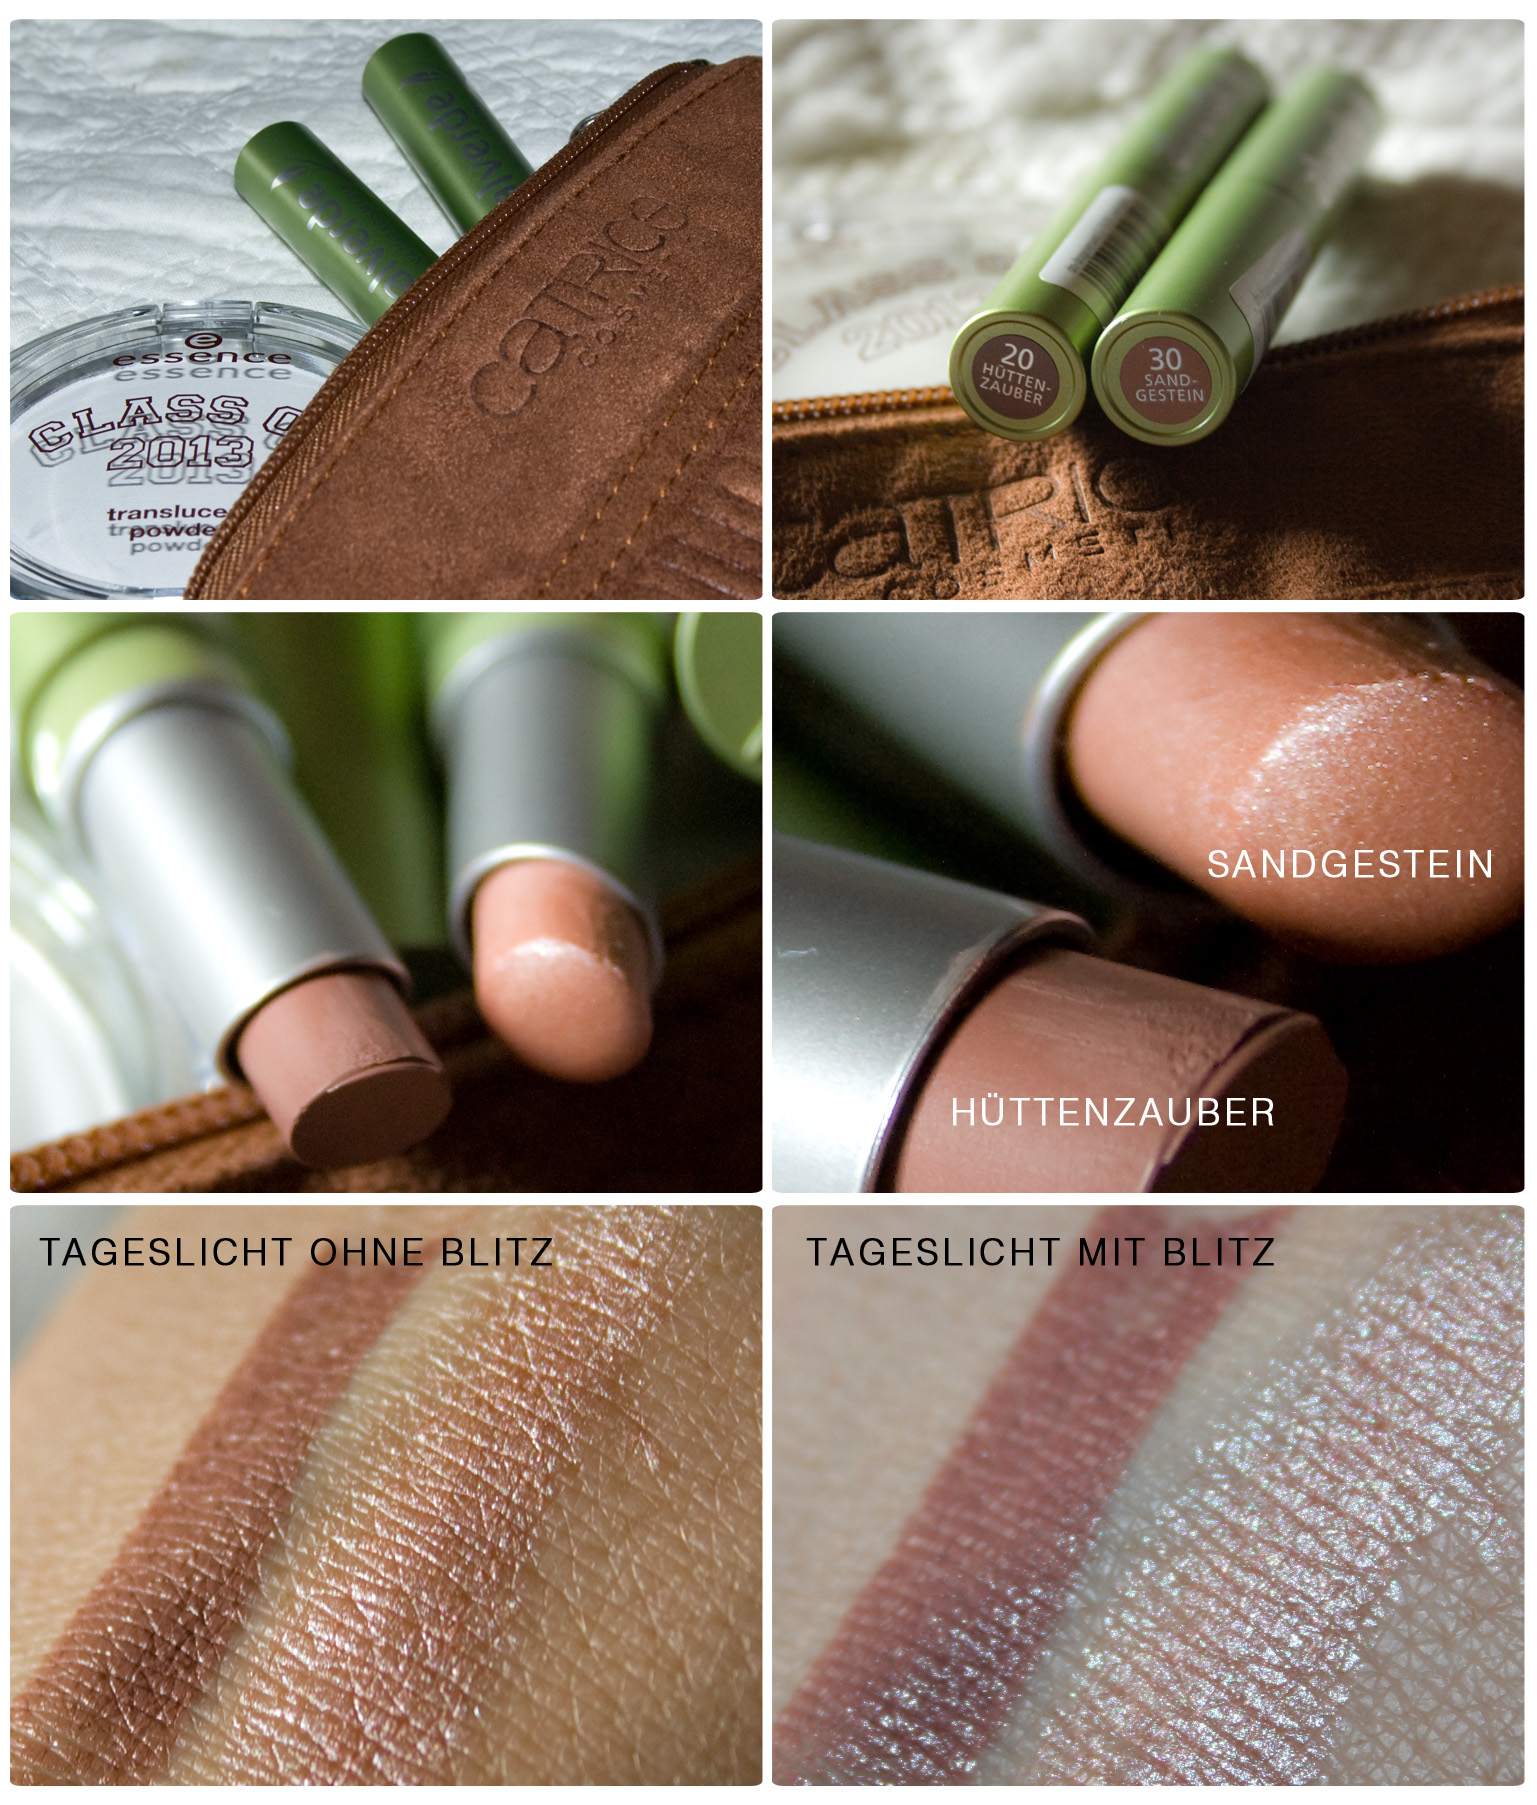 Neuzugänge von essence (Class of 2012"-LE) und alverde ("Alm Beauty"-LE) Slim Lipsticks in den Farben 30 "Sandgestein" und 20 "Hüttenzauber"